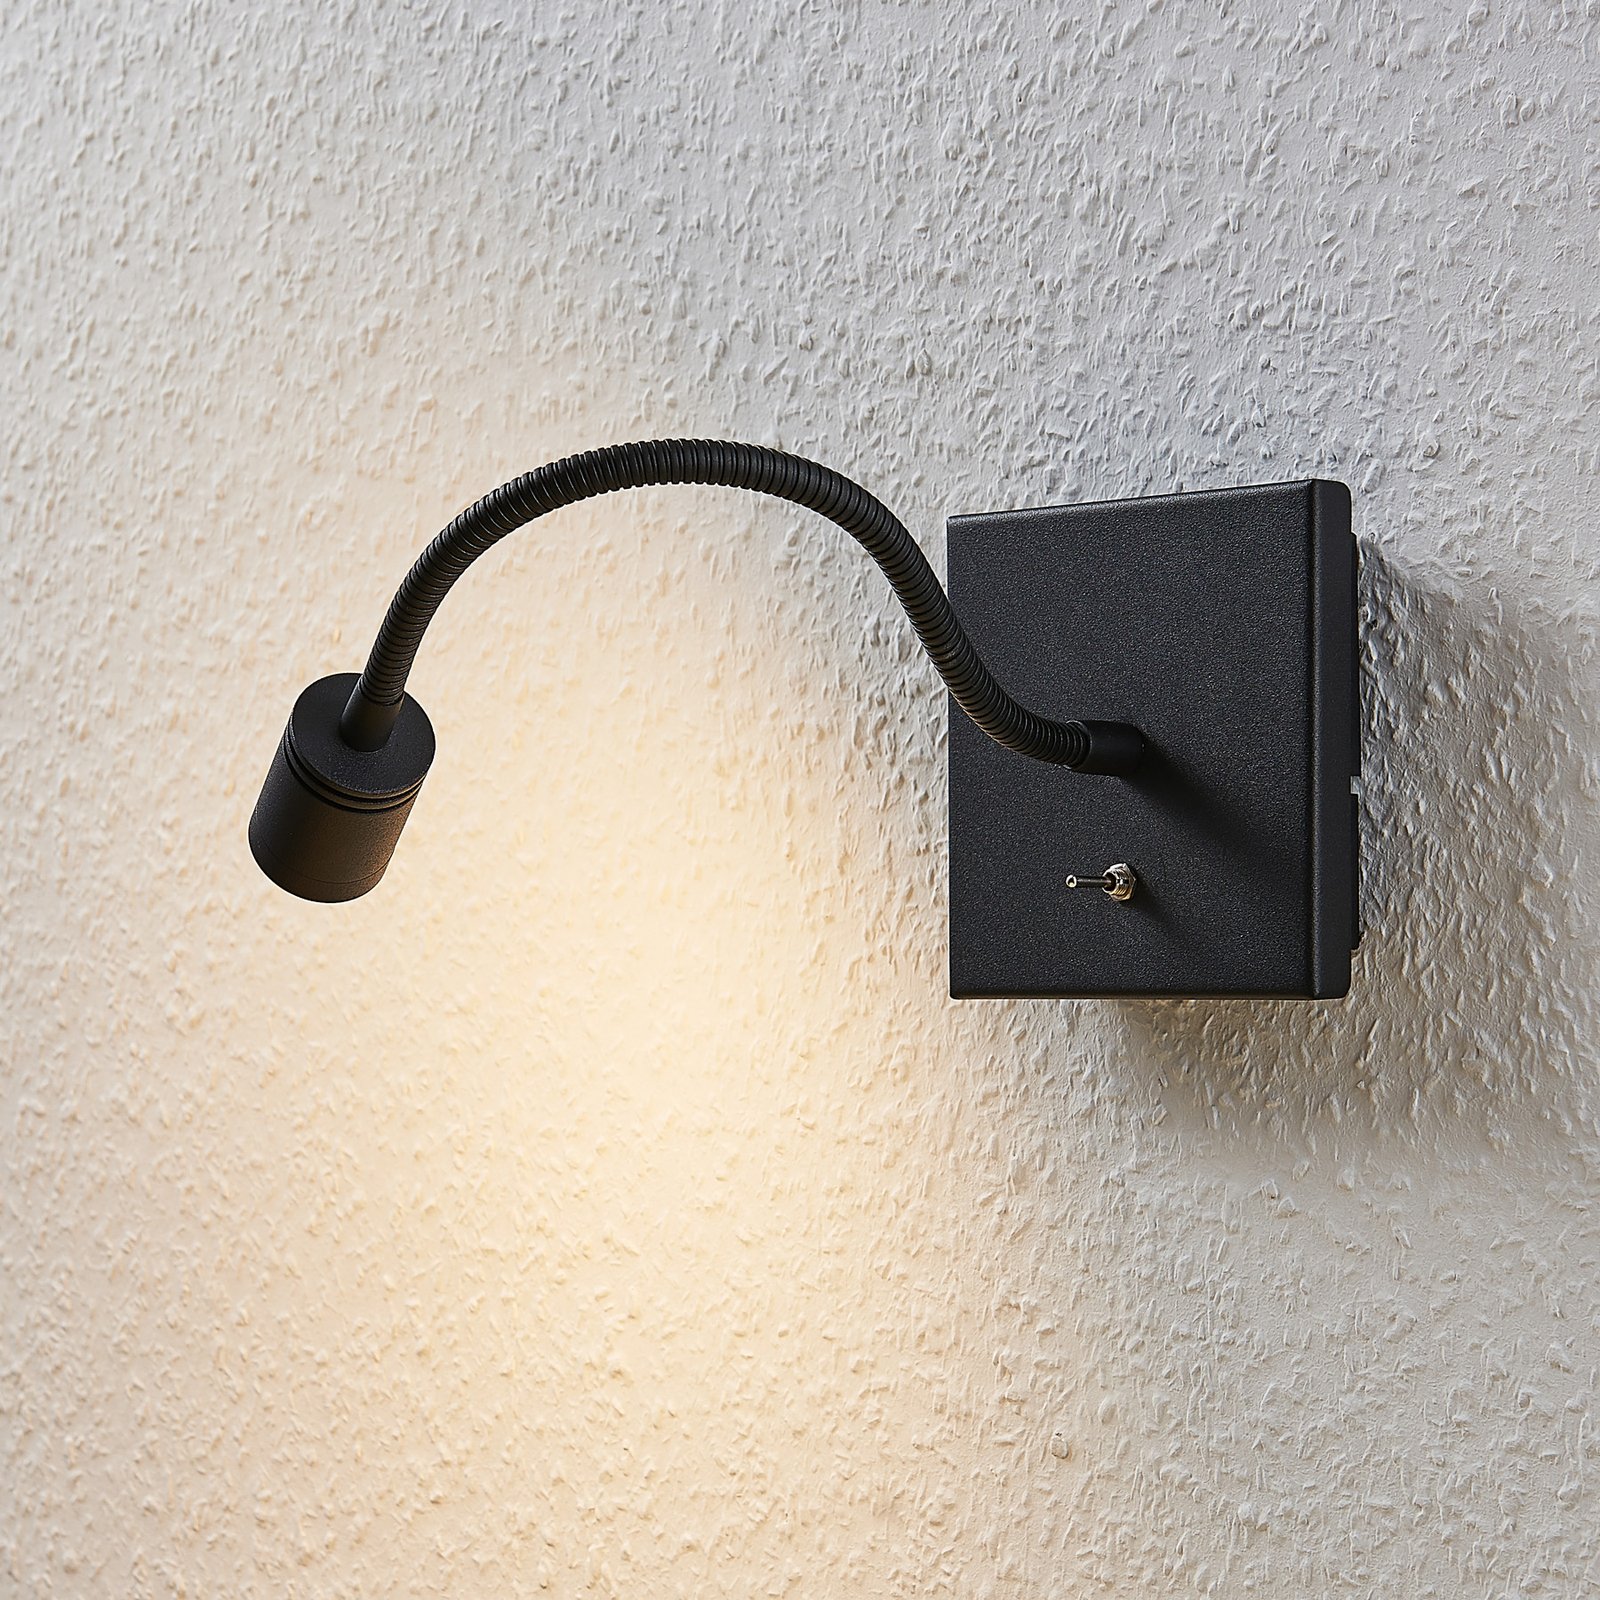 LED fali világítás Mayar flex kar, fekete 2-es klt